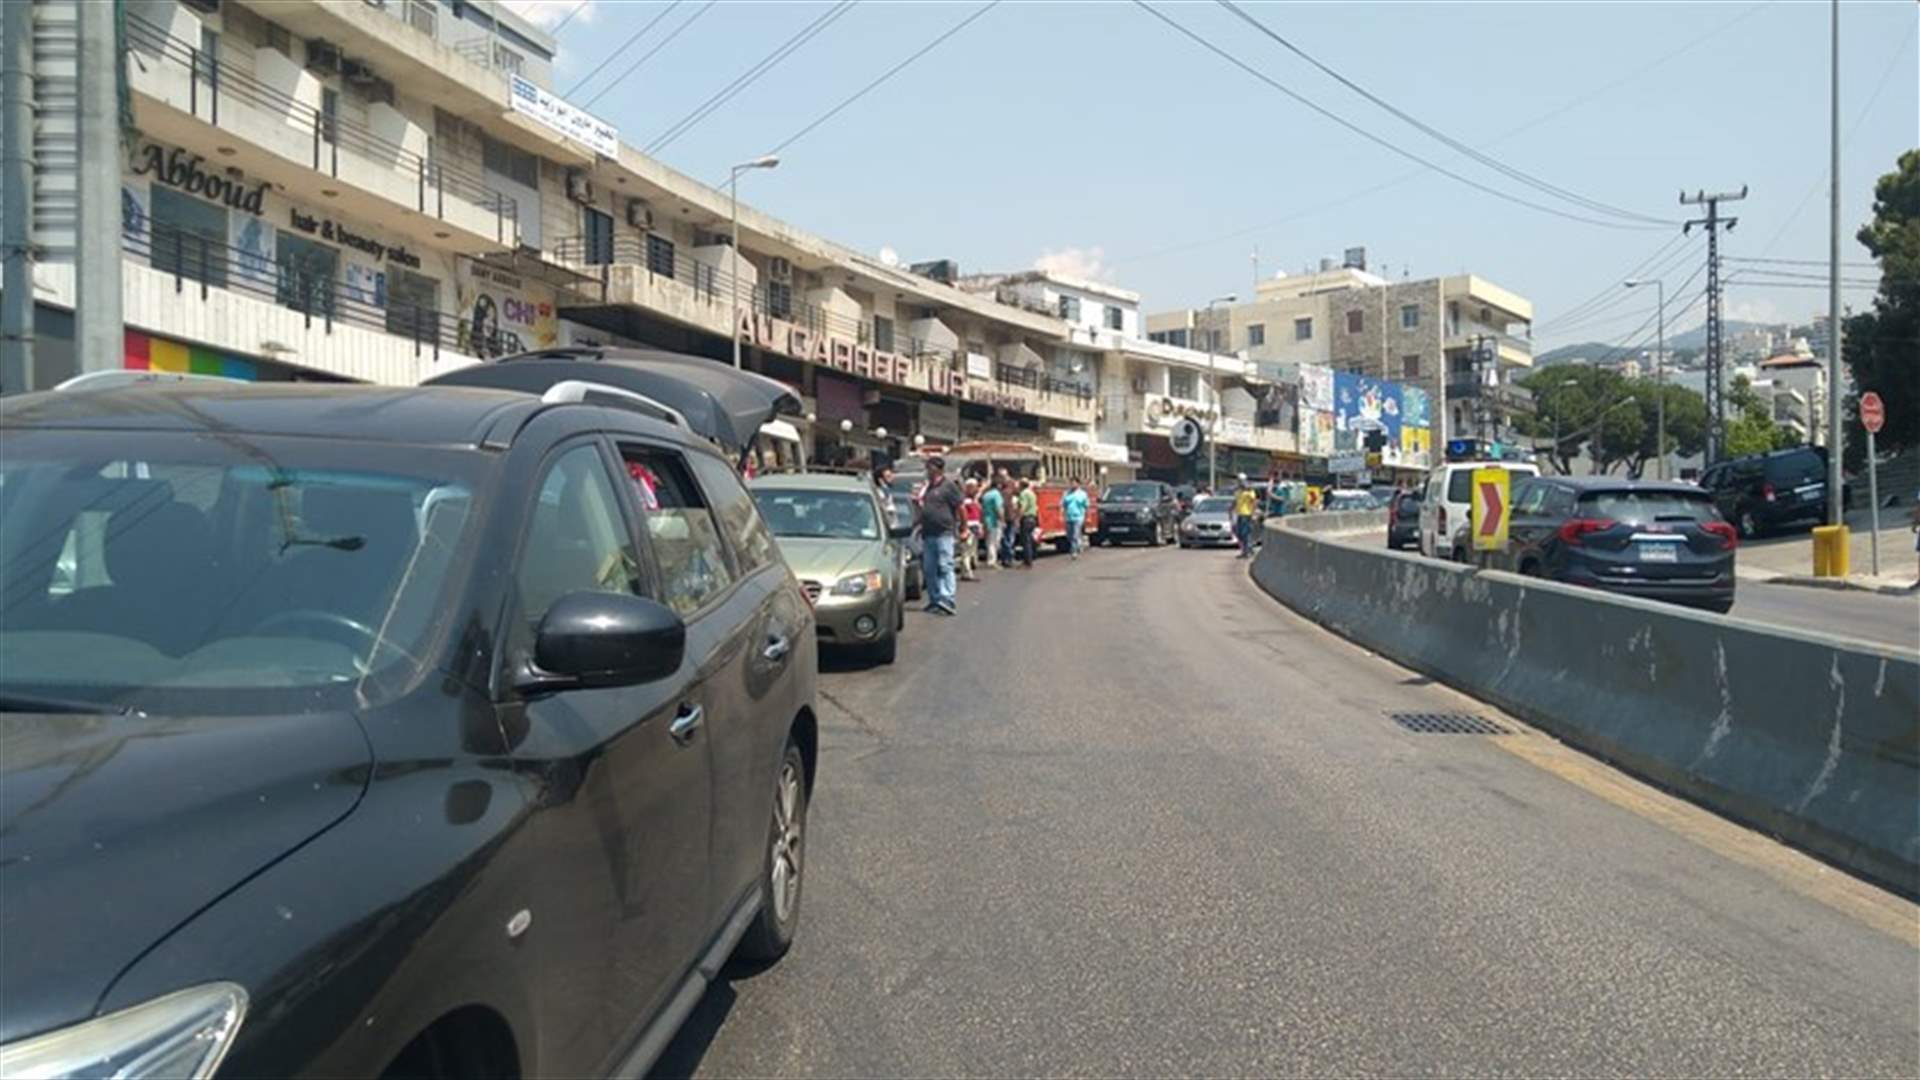 مسيرات سيارة إنطلقت من المناطق وجابت شوارع بيروت وصولا الى المرفأ